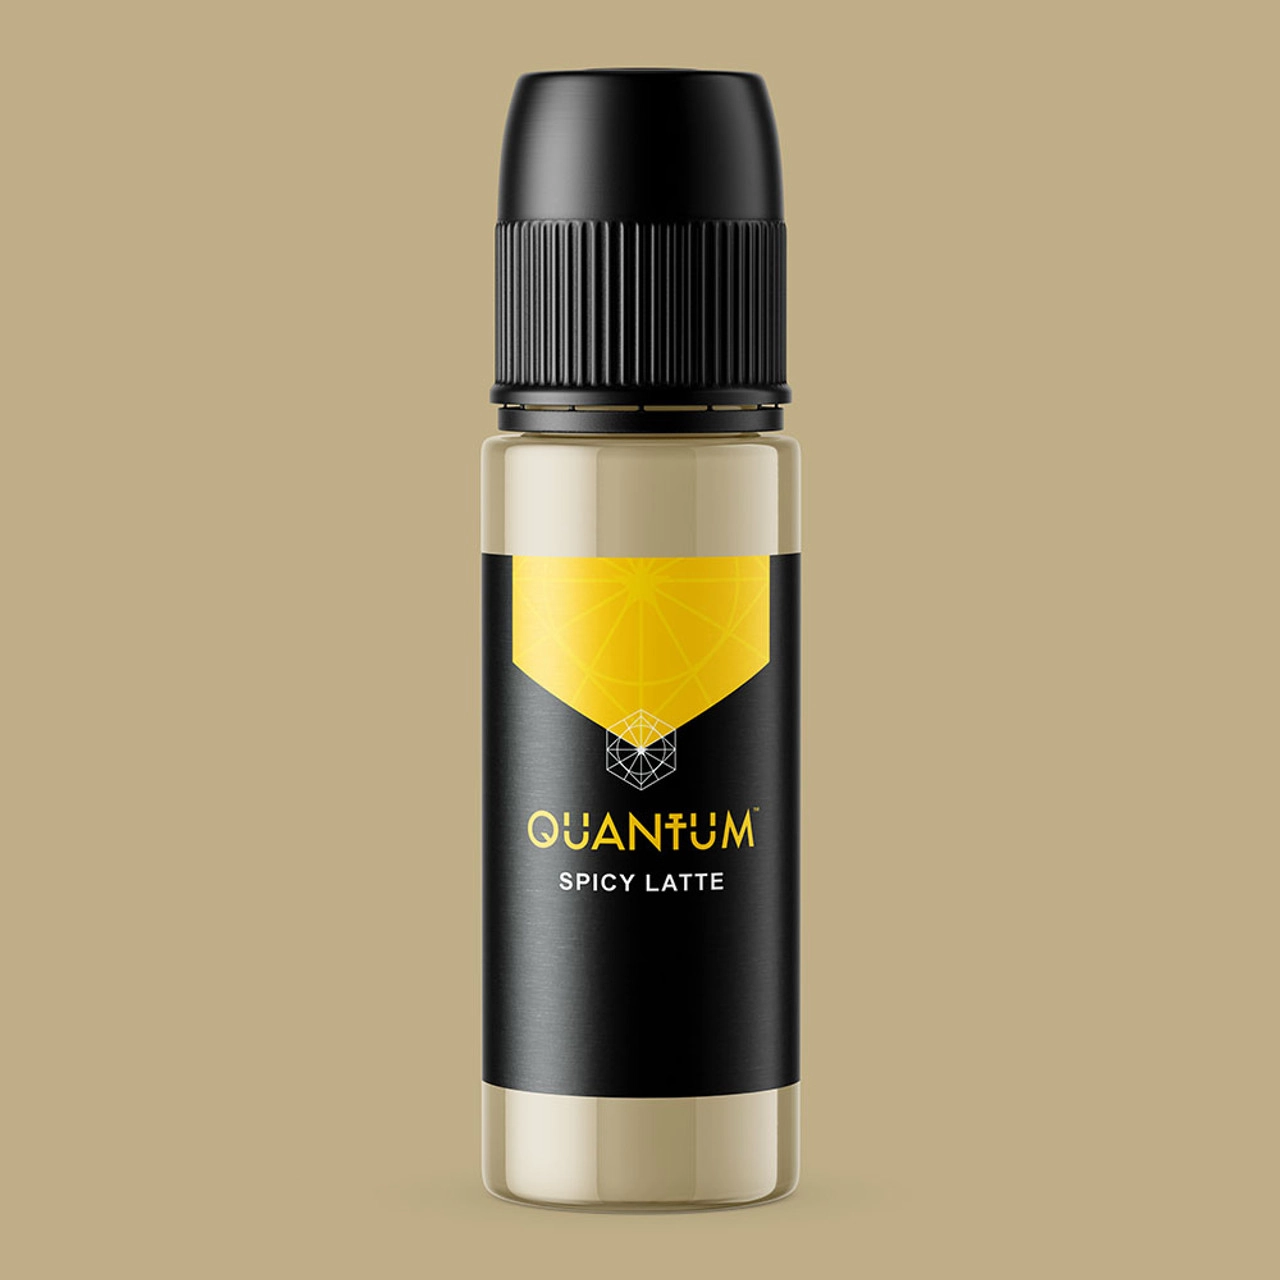 Quantum Ink Tattoofarbe - Spicy Latte REACH Gold Label (30 ml)